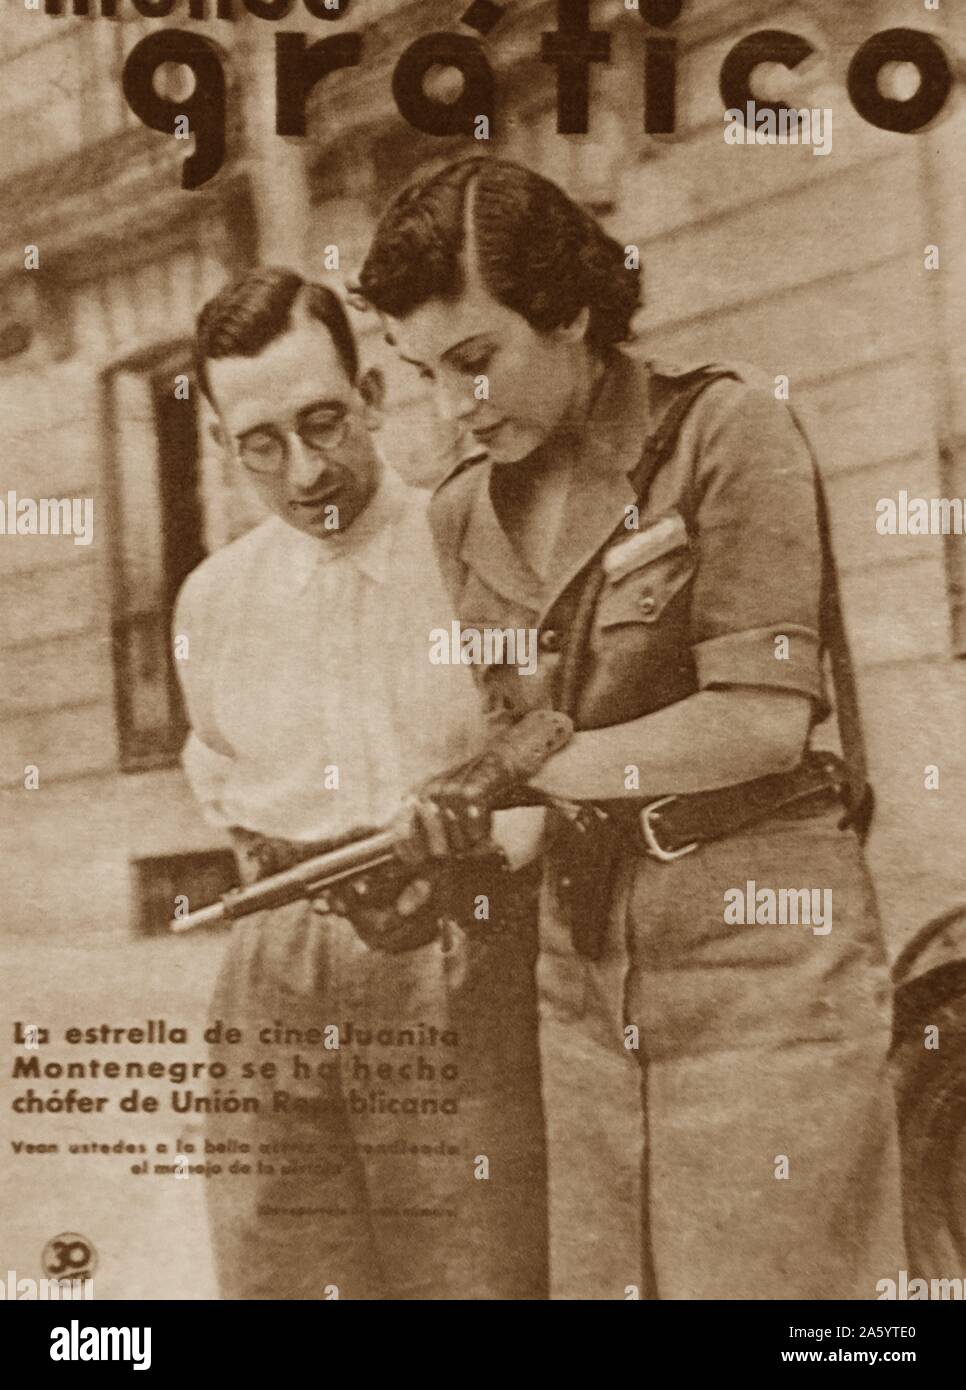 Il repubblicano spagnolo attrice cinematografica Juanita Montenegro sul coperchio anteriore di 'Mannulla Grafico " durante la Guerra Civile Spagnola Foto Stock